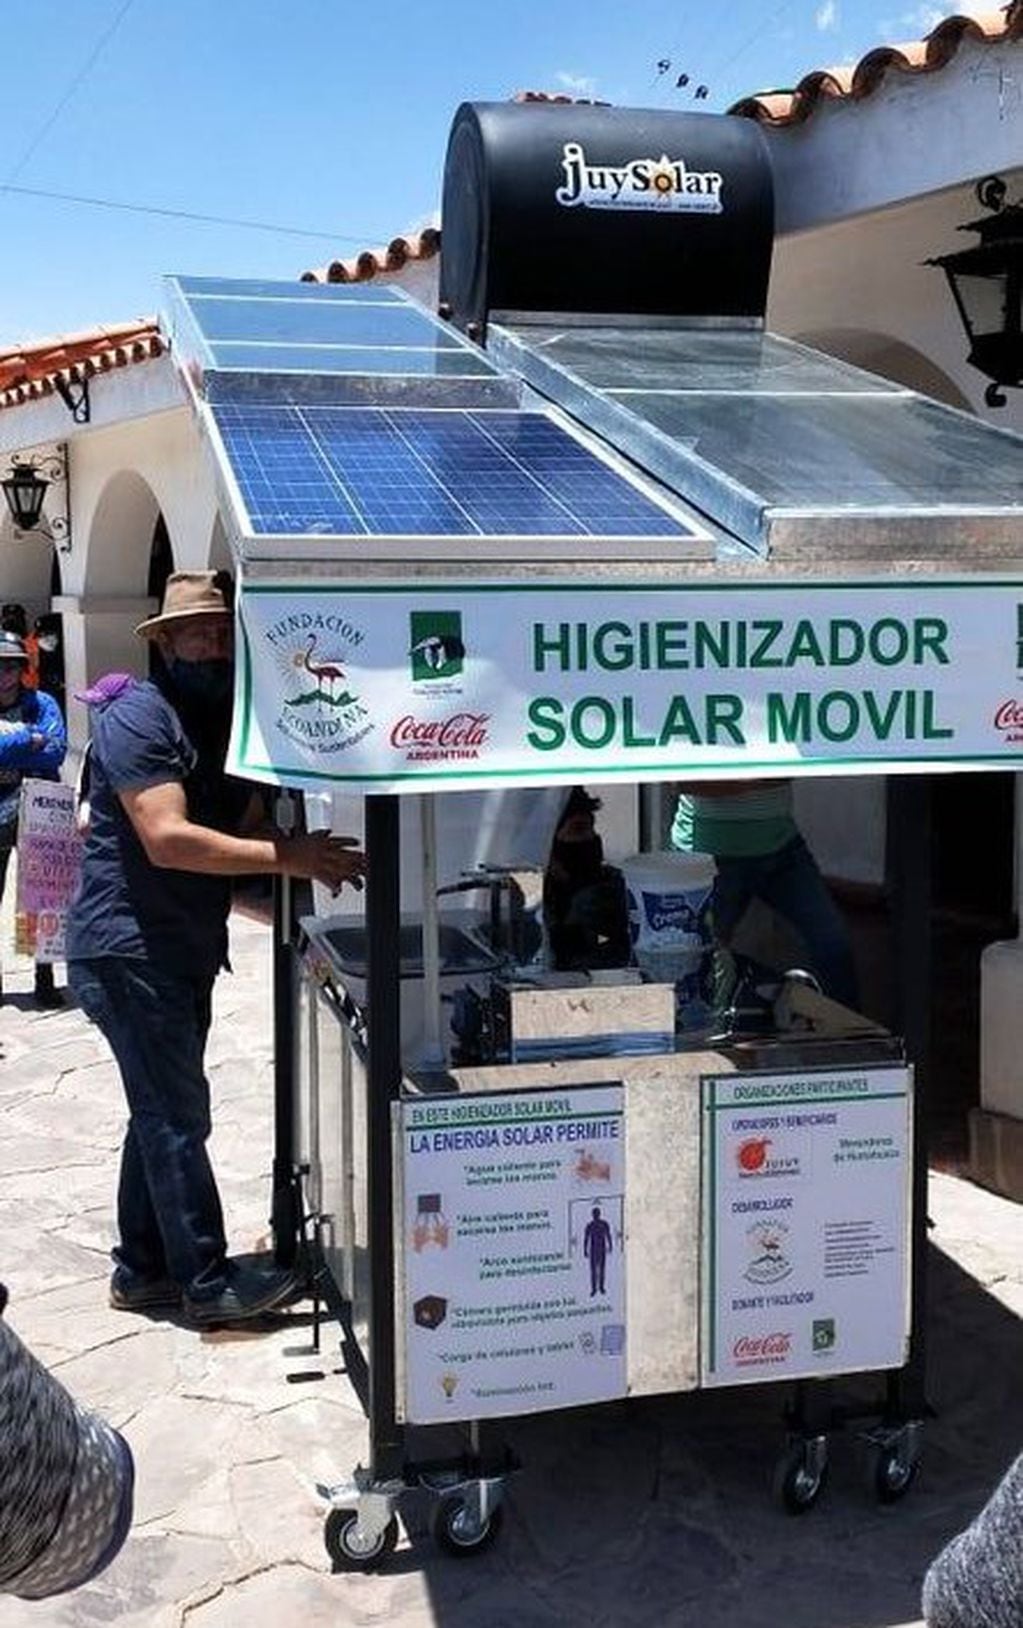 La fundación EcoAndina trabaja en Jujuy desarrollando soluciones sustentables para mejorar la calidad de vida las personas, a través del uso de energías renovables.